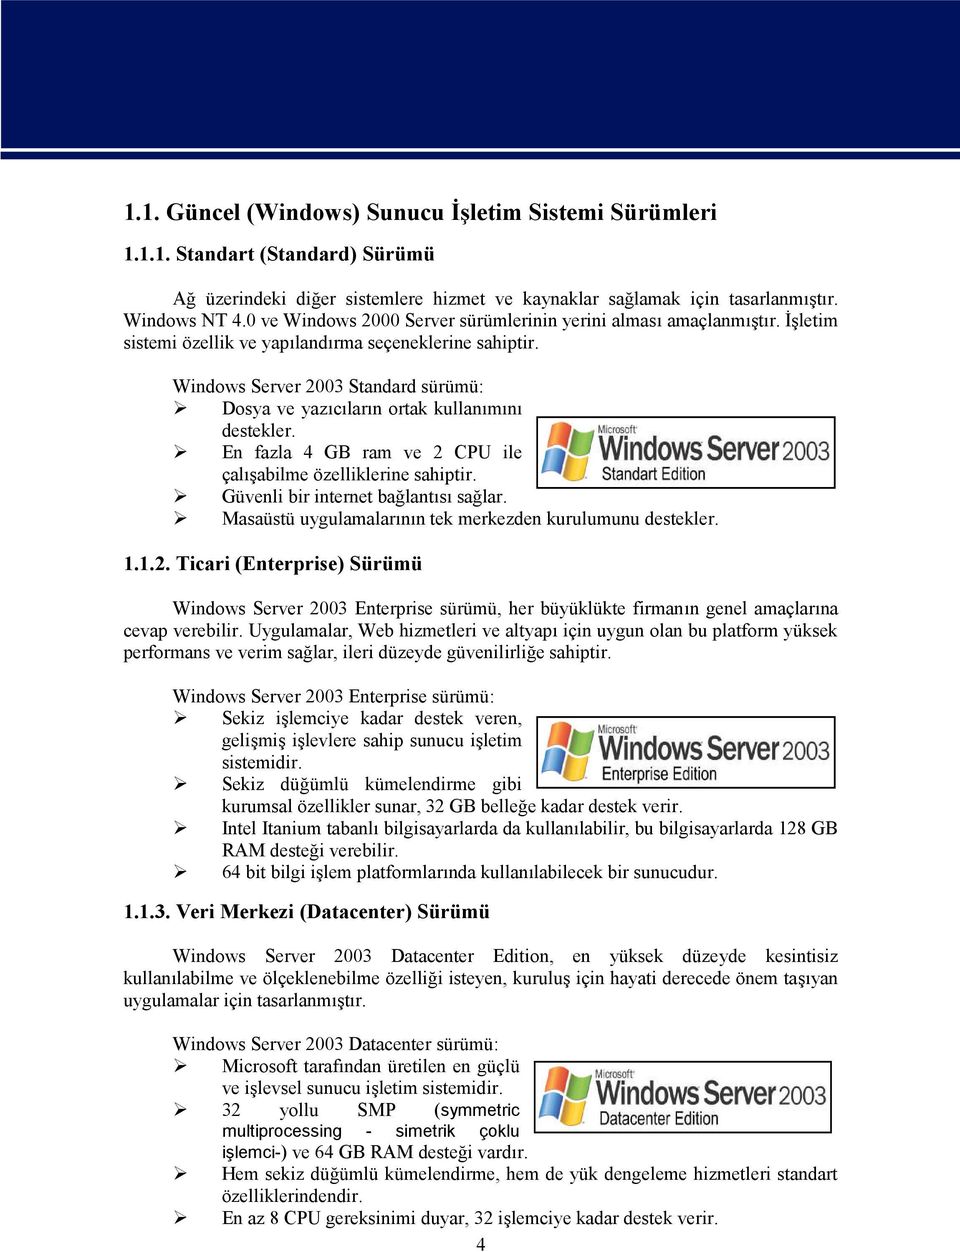 Windows Server 2003 Standard sürümü: Dosya ve yazıcıların ortak kullanımını destekler. En fazla 4 GB ram ve 2 CPU ile çalışabilme özelliklerine sahiptir. Güvenli bir internet bağlantısı sağlar.